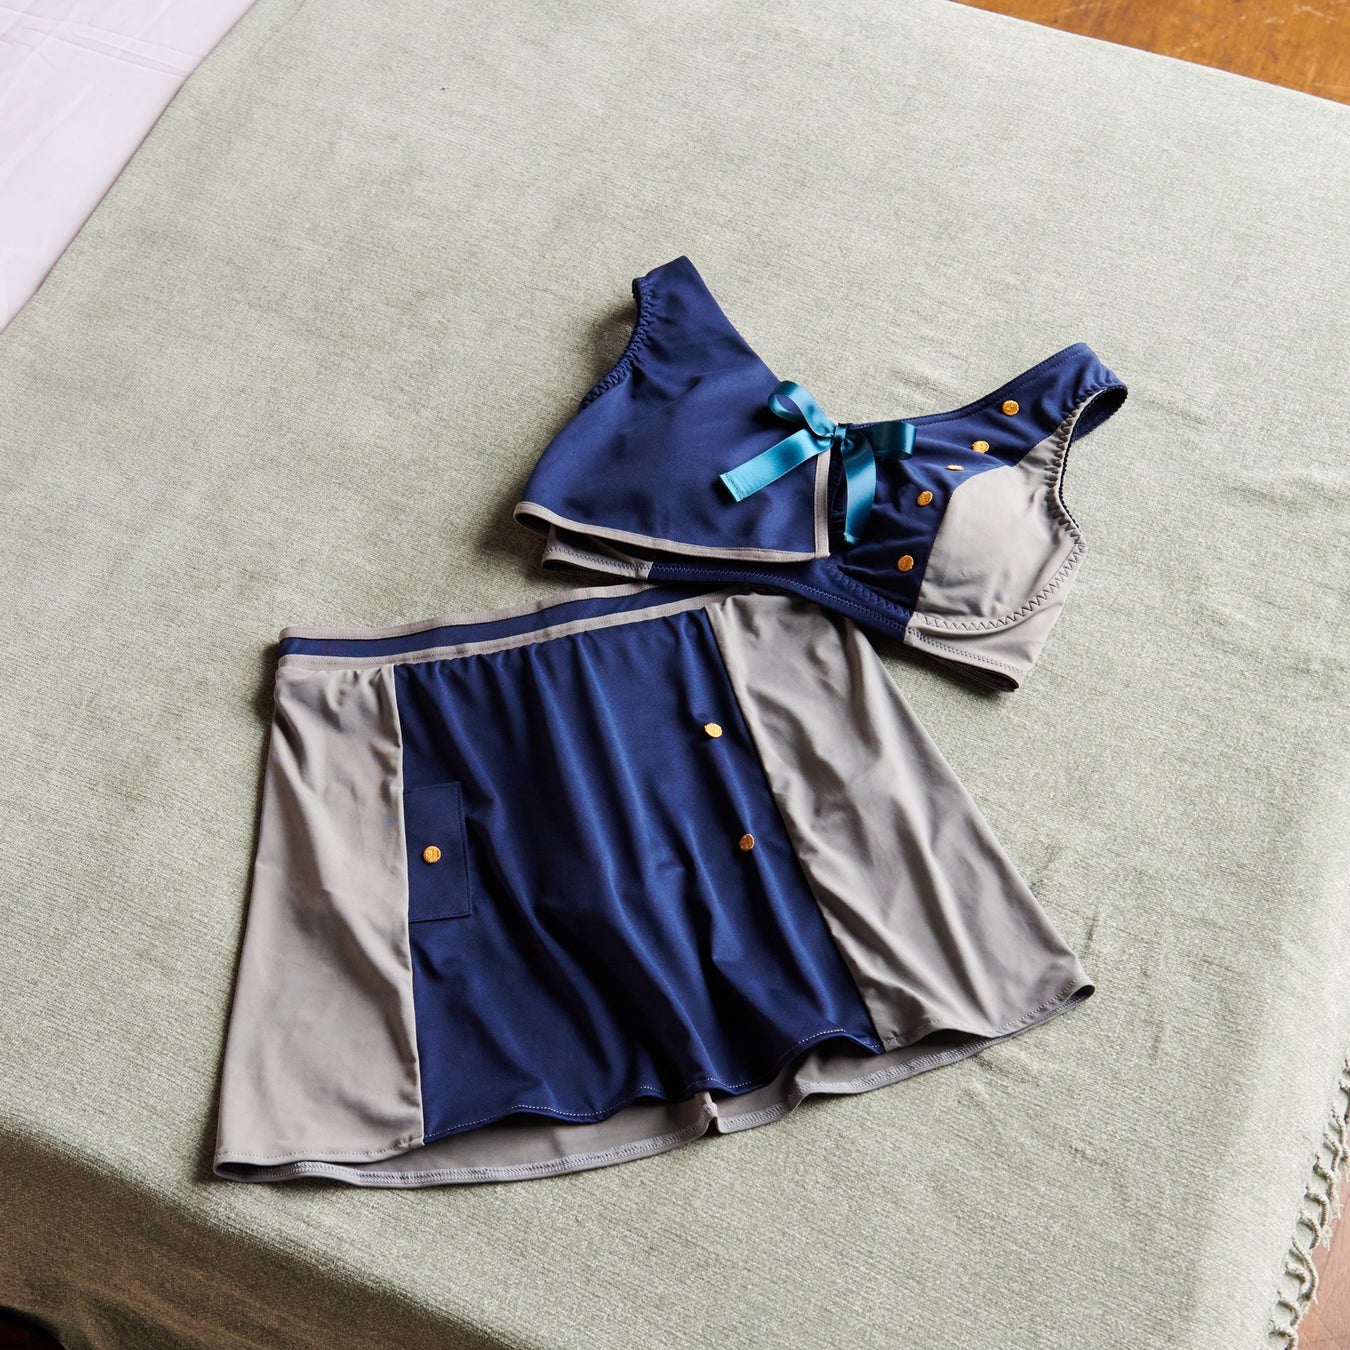 TVアニメ『リコリス・リコイル』より、千束とたきなが着用しているリコリス制服をモチーフにしたおやすみ用ブラとスカートパンツが登場！